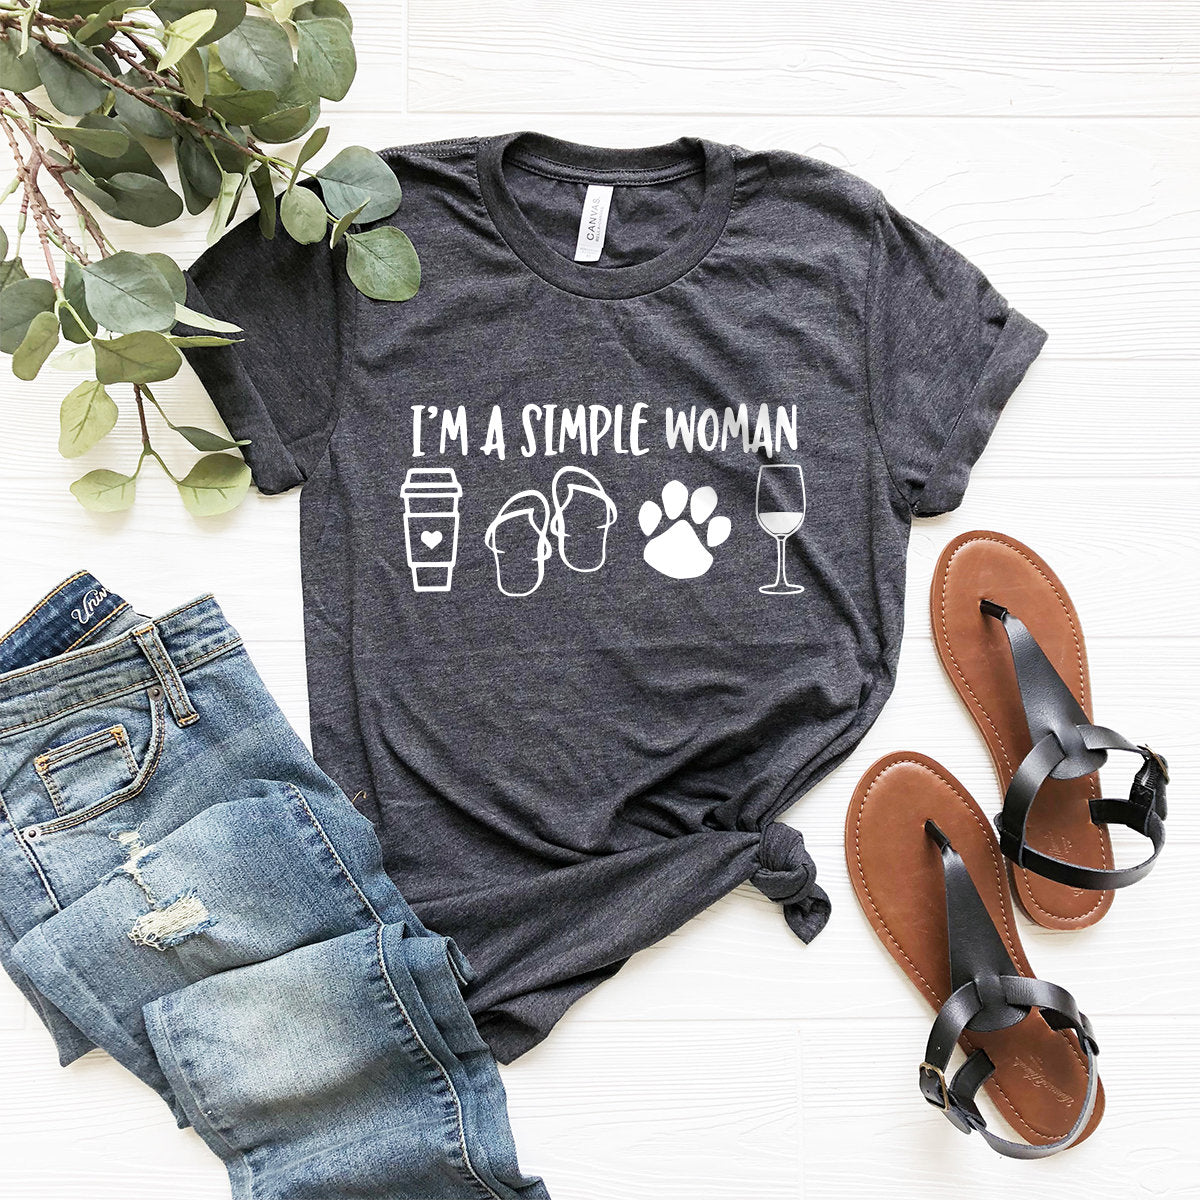 I Am A Simple Woman Shirt, Coffee Dog Wine Girl Shirt, Gift For Women, Women's shirt, Girl Power T-Shirt, Simple Girl Tee, Funny Women Shirt - Fastdeliverytees.com